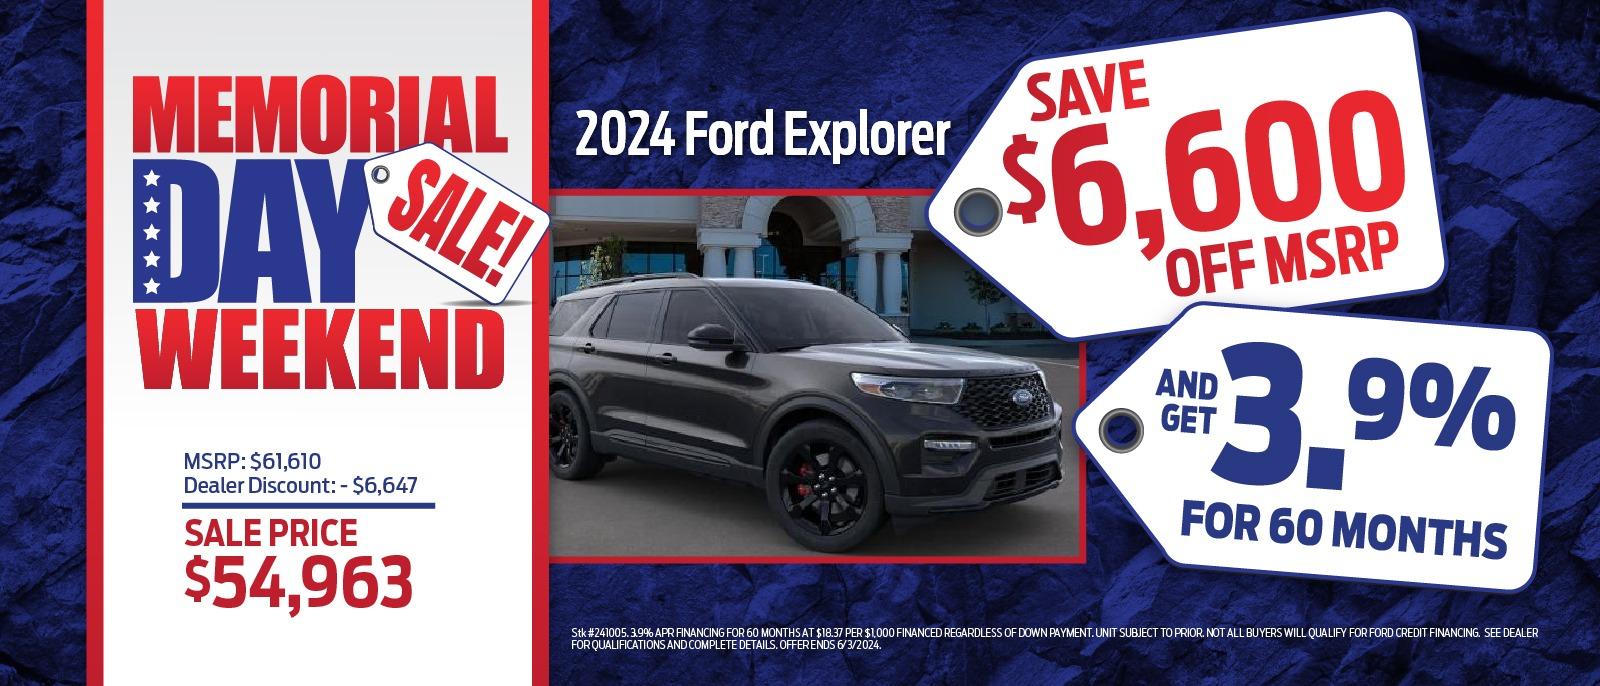 2024 Ford Explorer
Save $6,600 Off MSRP